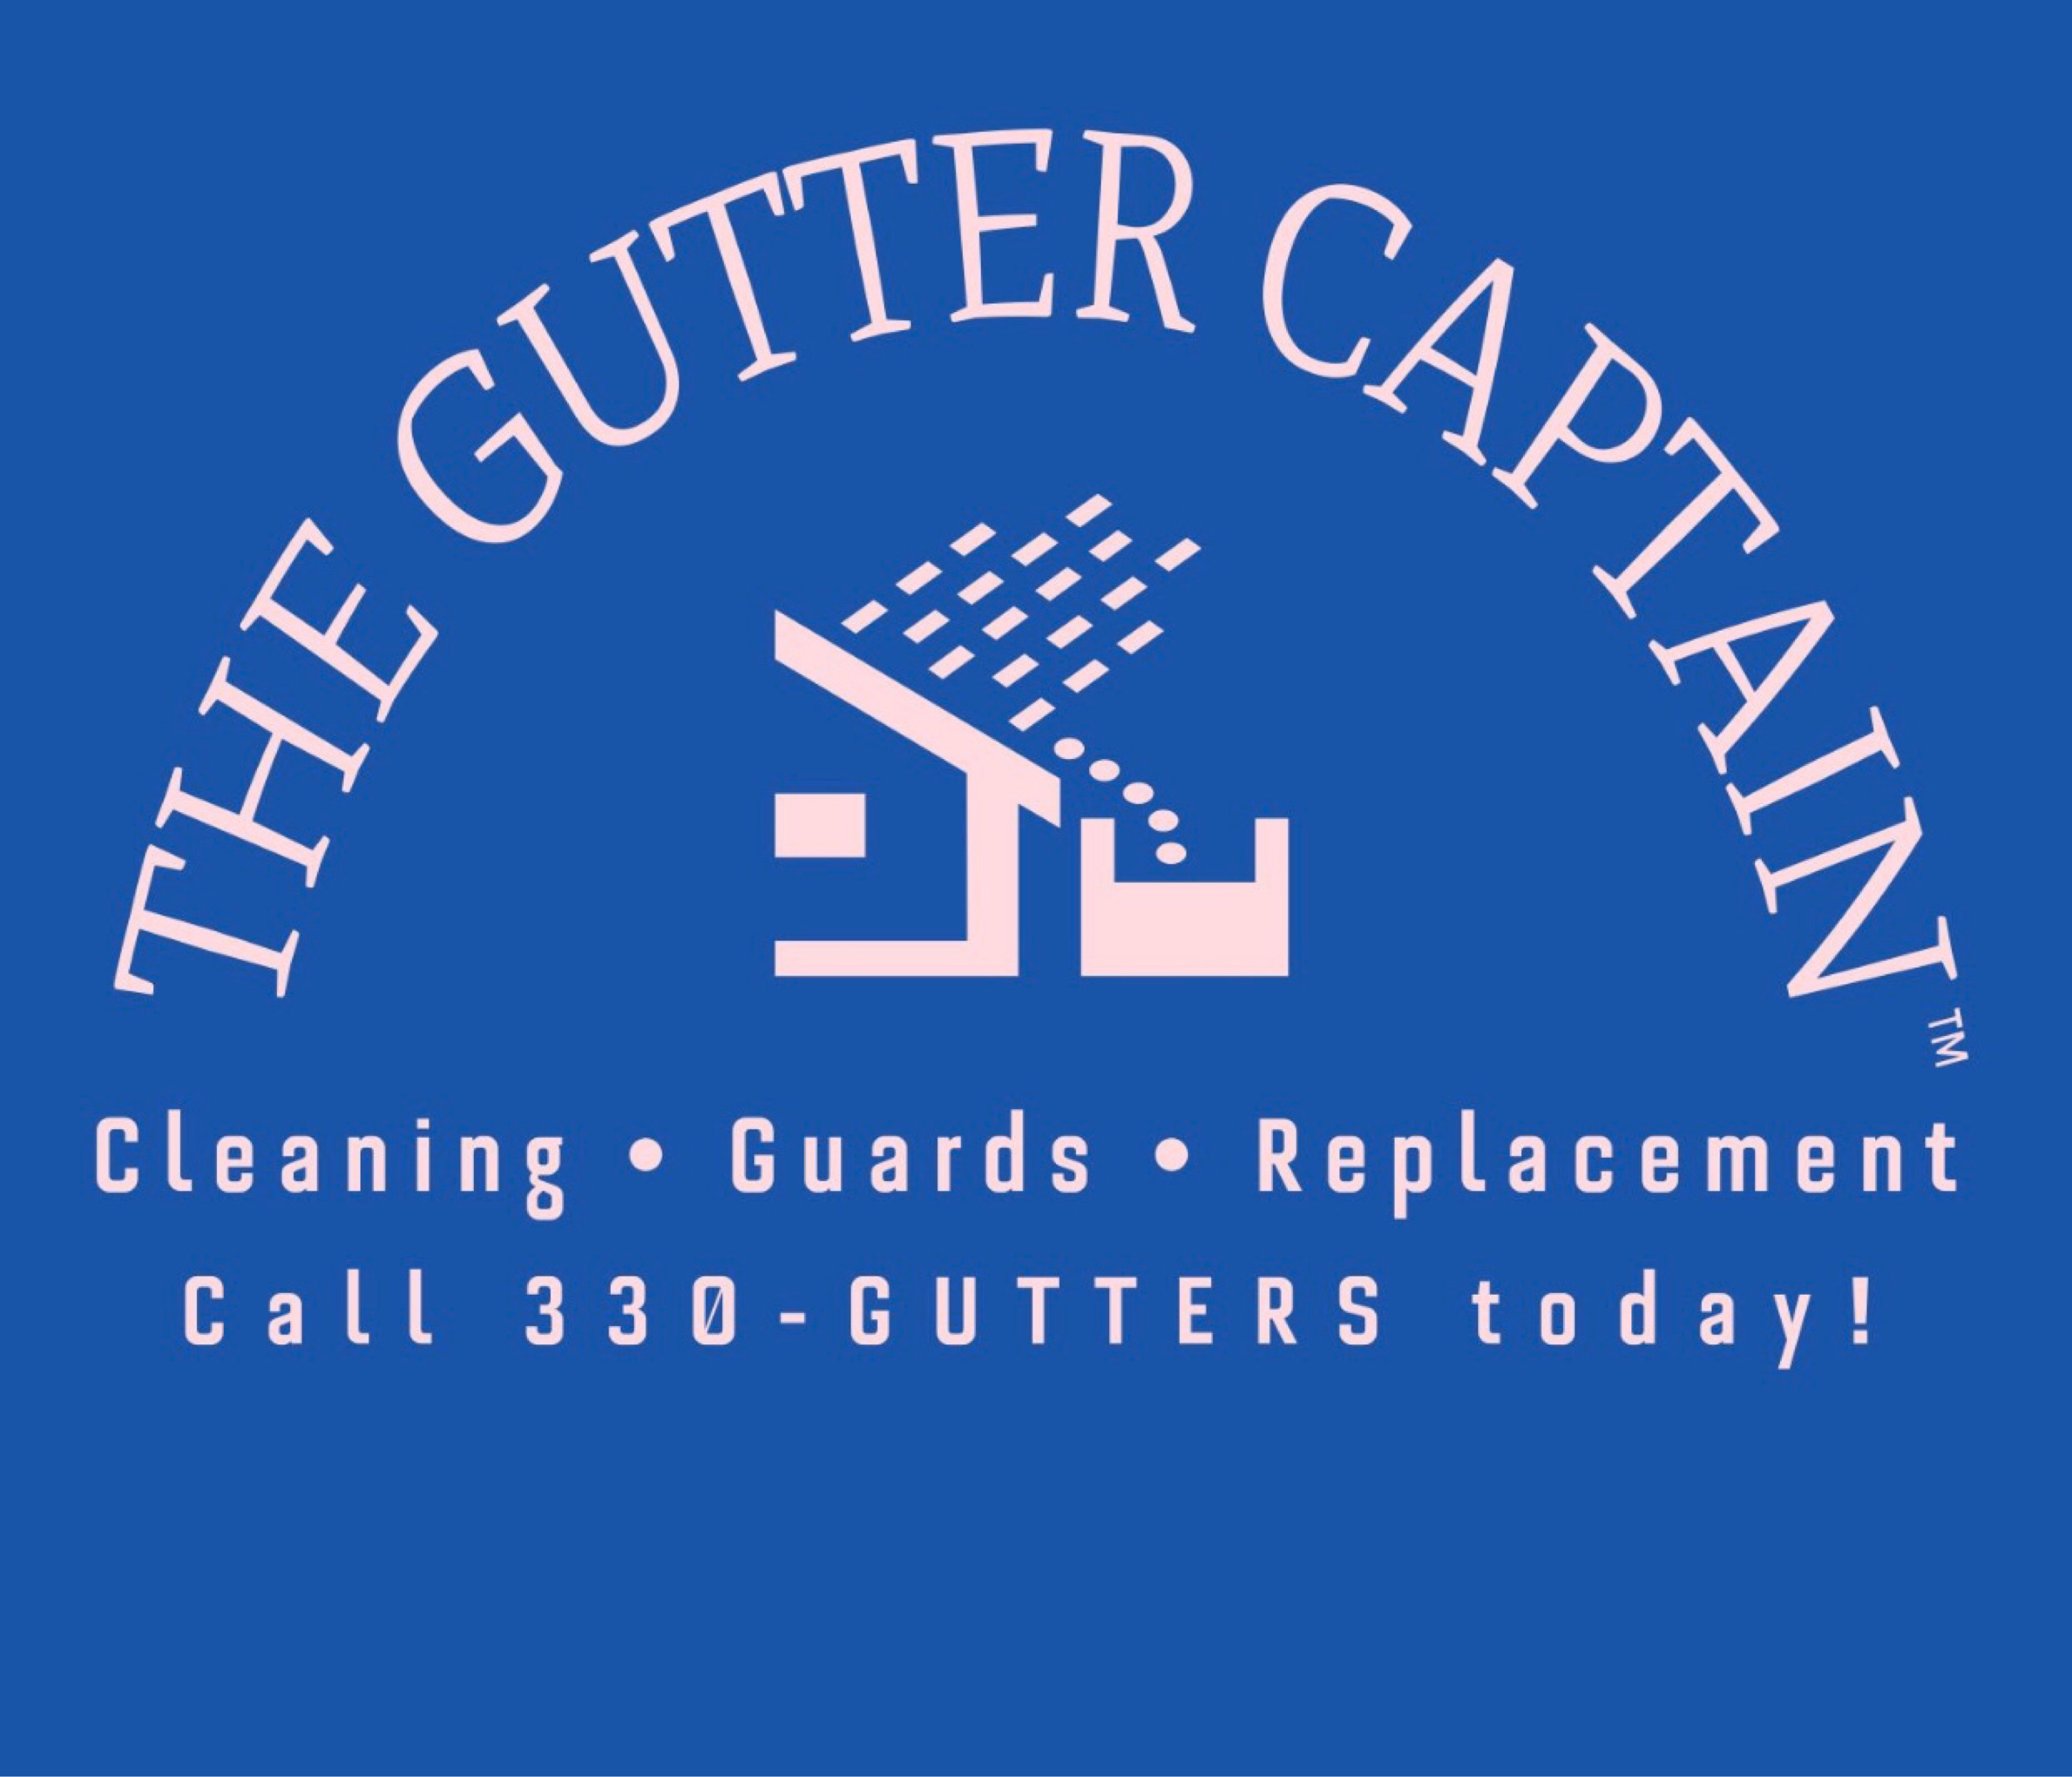 The Gutter Captain Logo